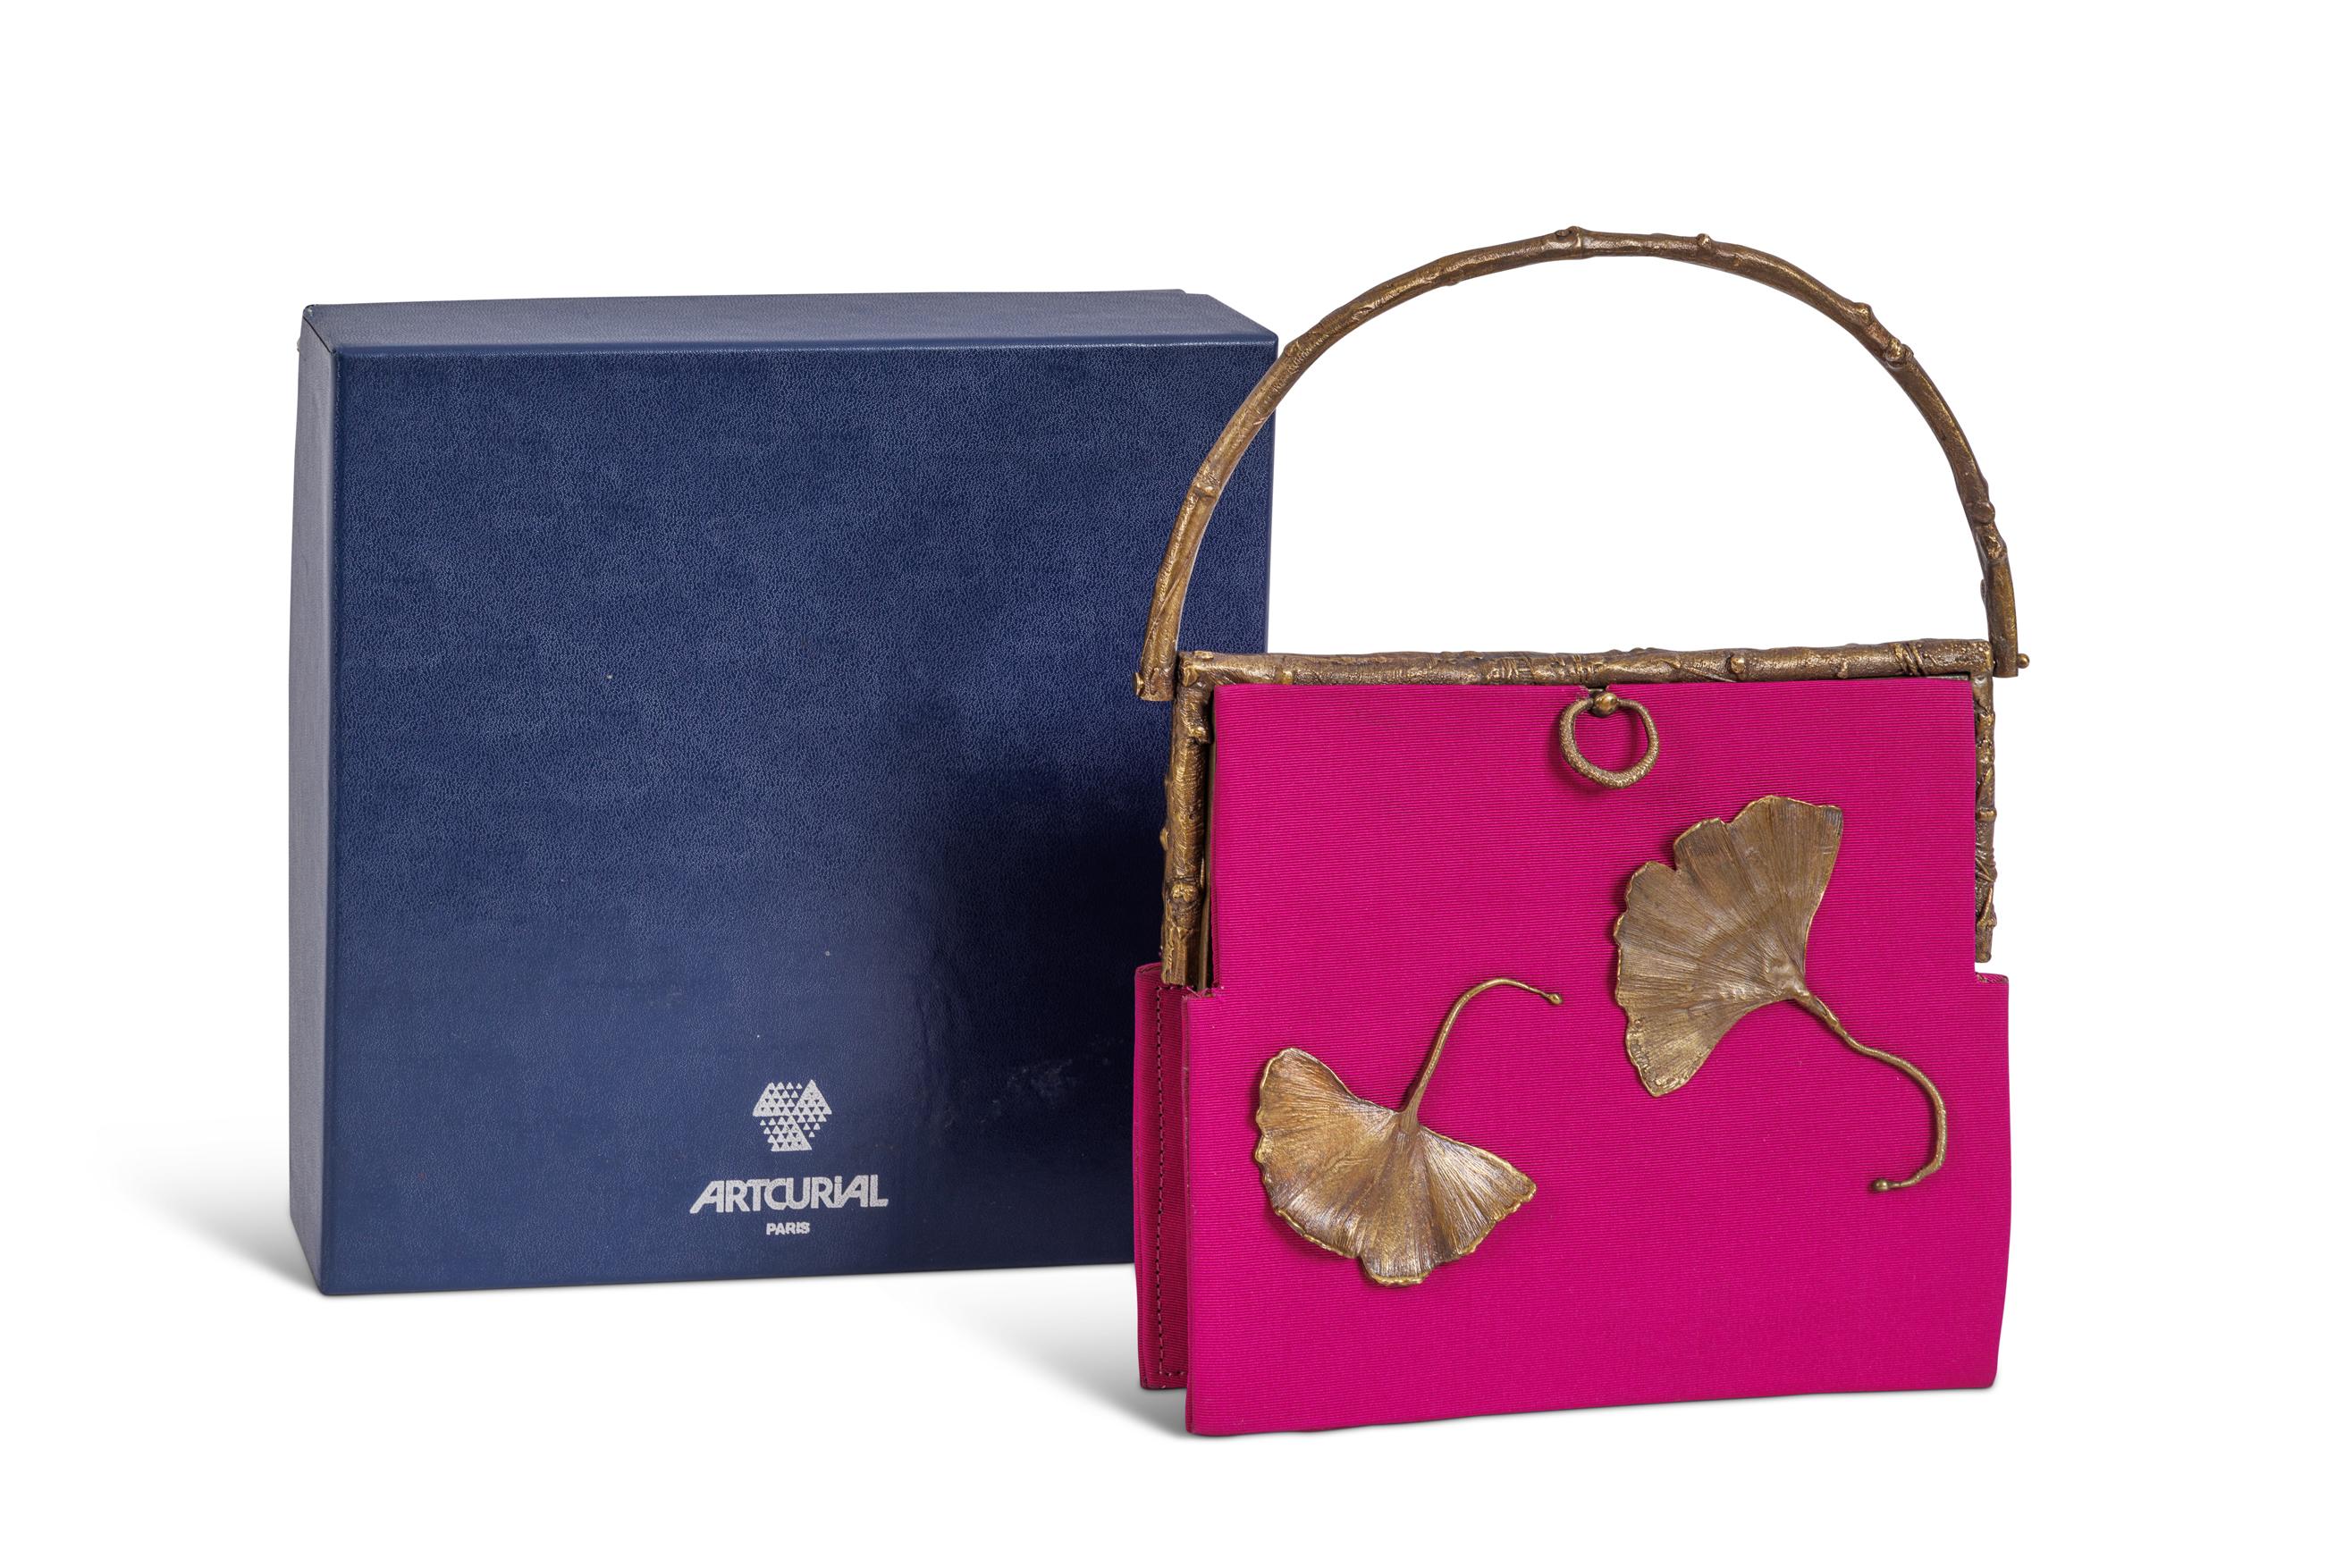 Tauchen Sie ein in die bezaubernde Welt von Claude Lalanne mit der exquisiten Ginkgo Handtasche, einem tragbaren Meisterwerk aus Lalannes ikonischer Ginkgo Kollektion. Diese mit unvergleichlicher Kunstfertigkeit gefertigte Handtasche ist ein Zeugnis